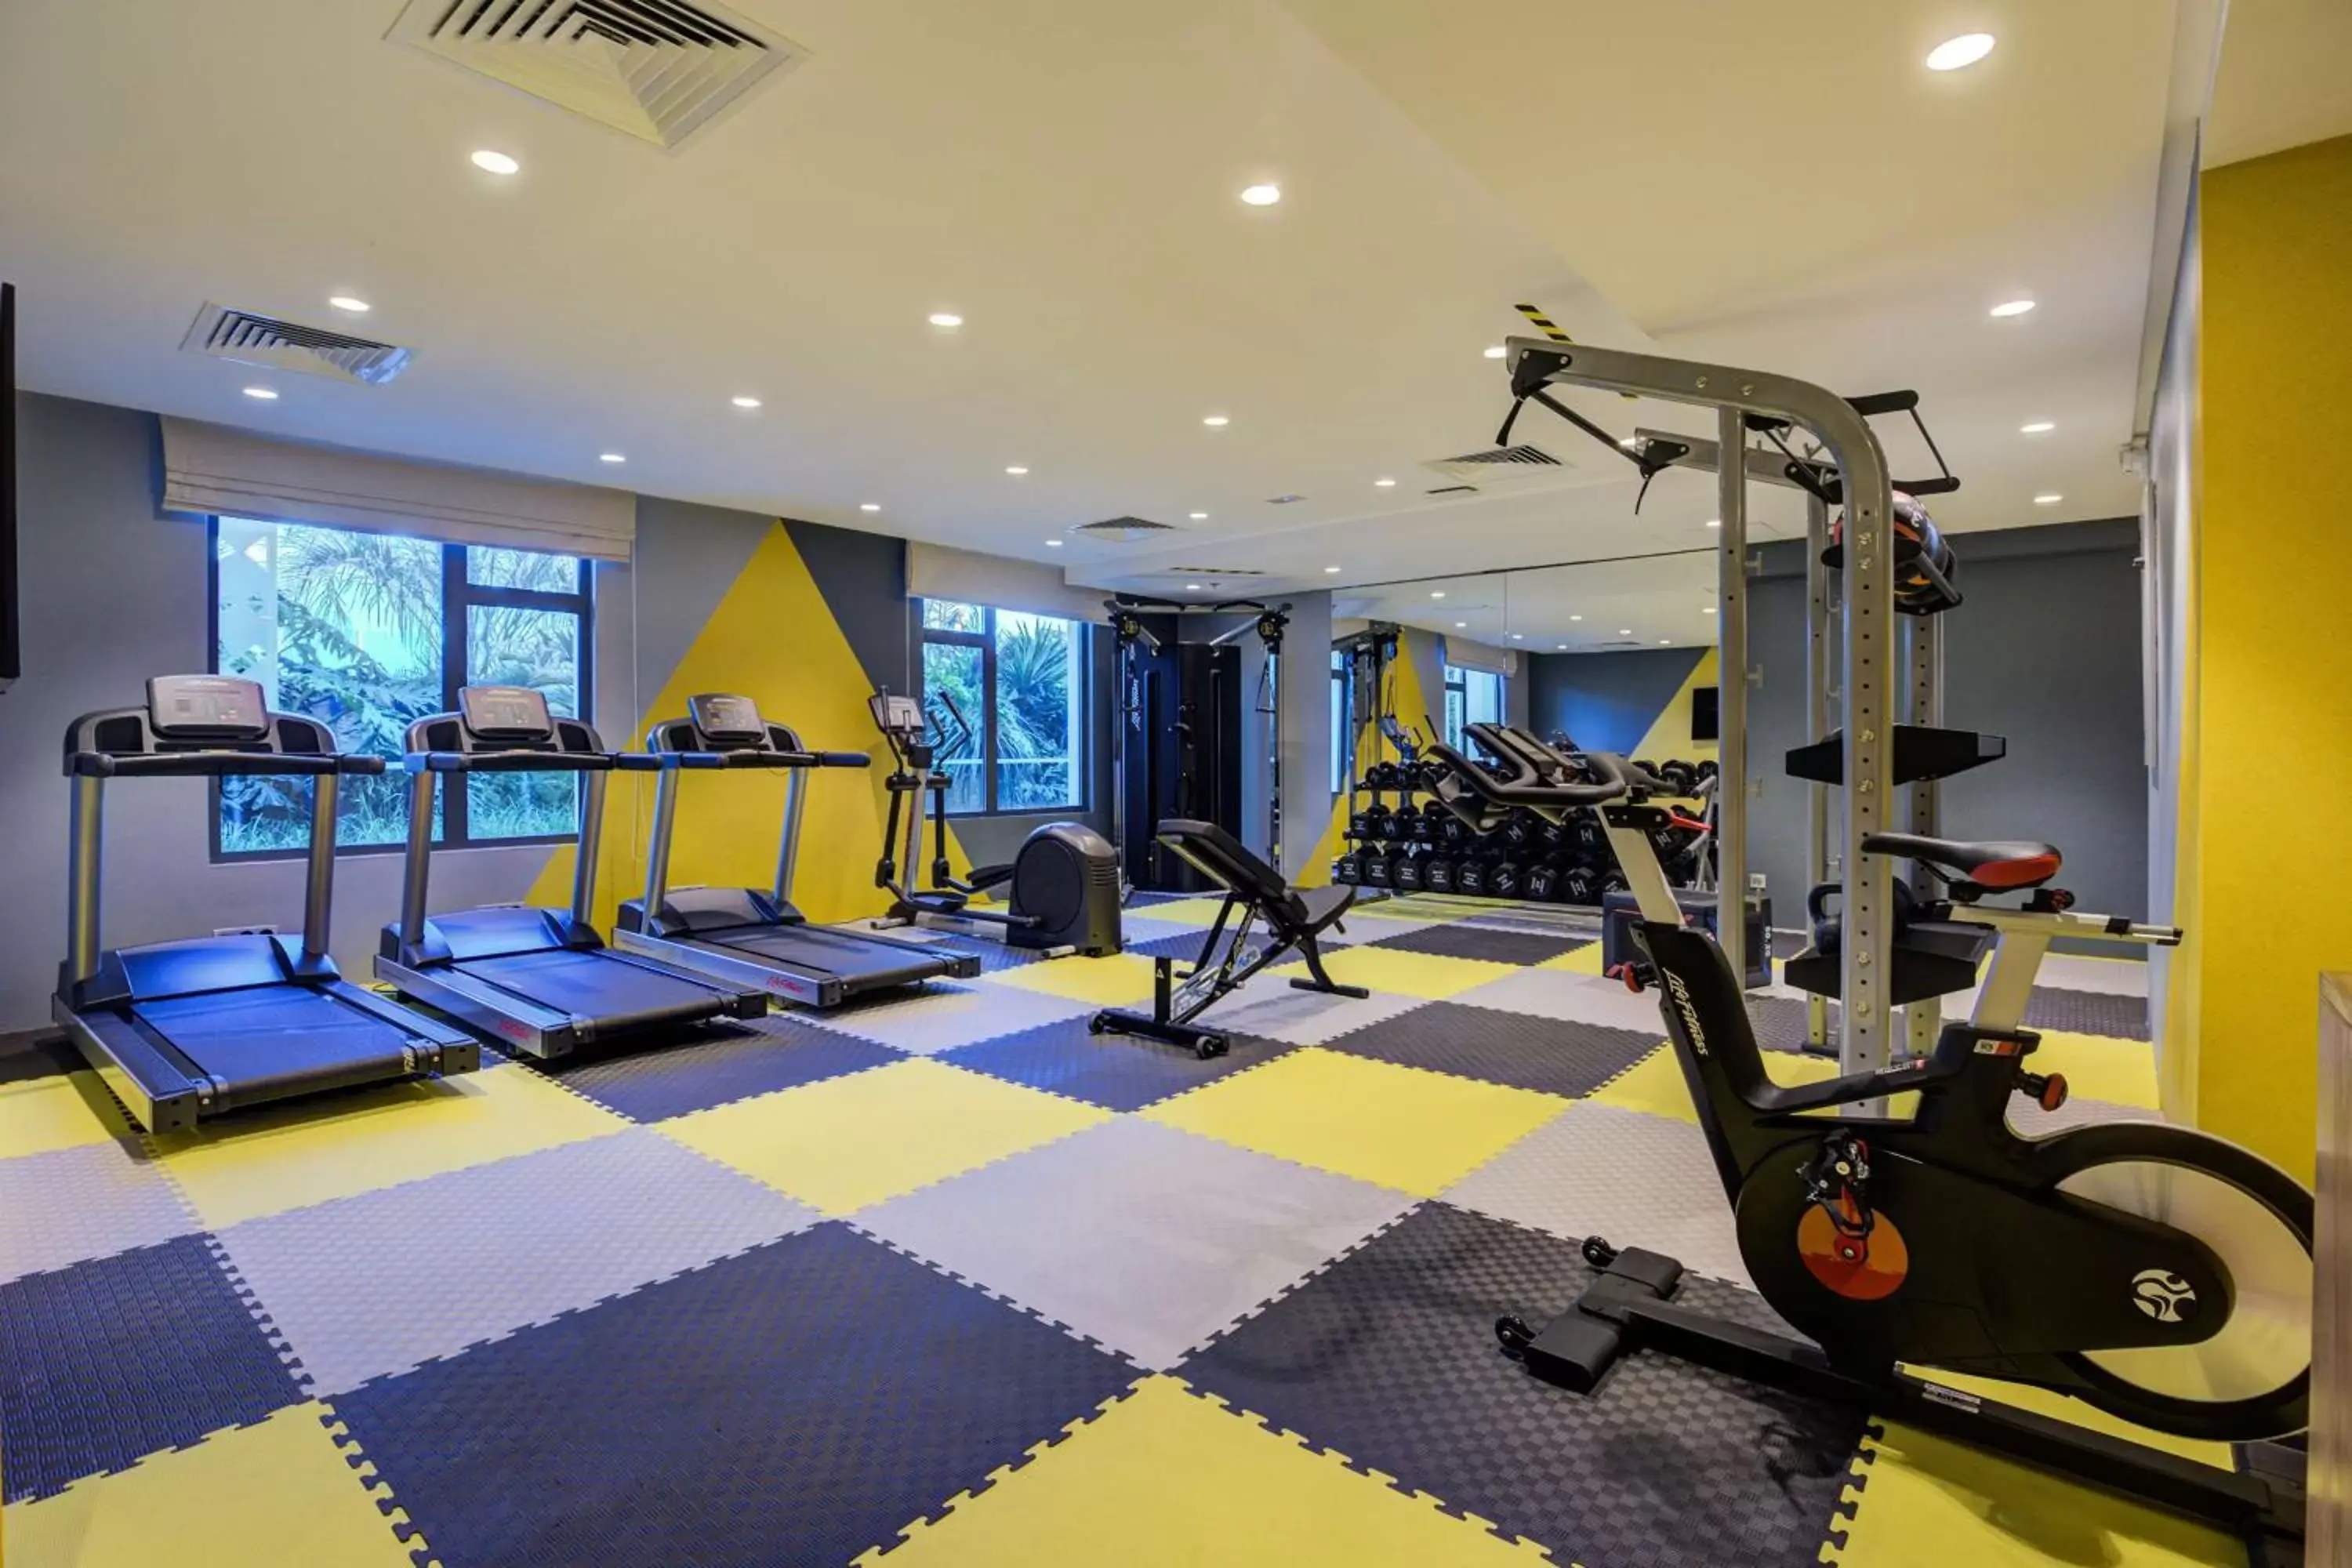 Fitness centre/facilities, Fitness Center/Facilities in Hilton Garden Inn Casablanca Sud